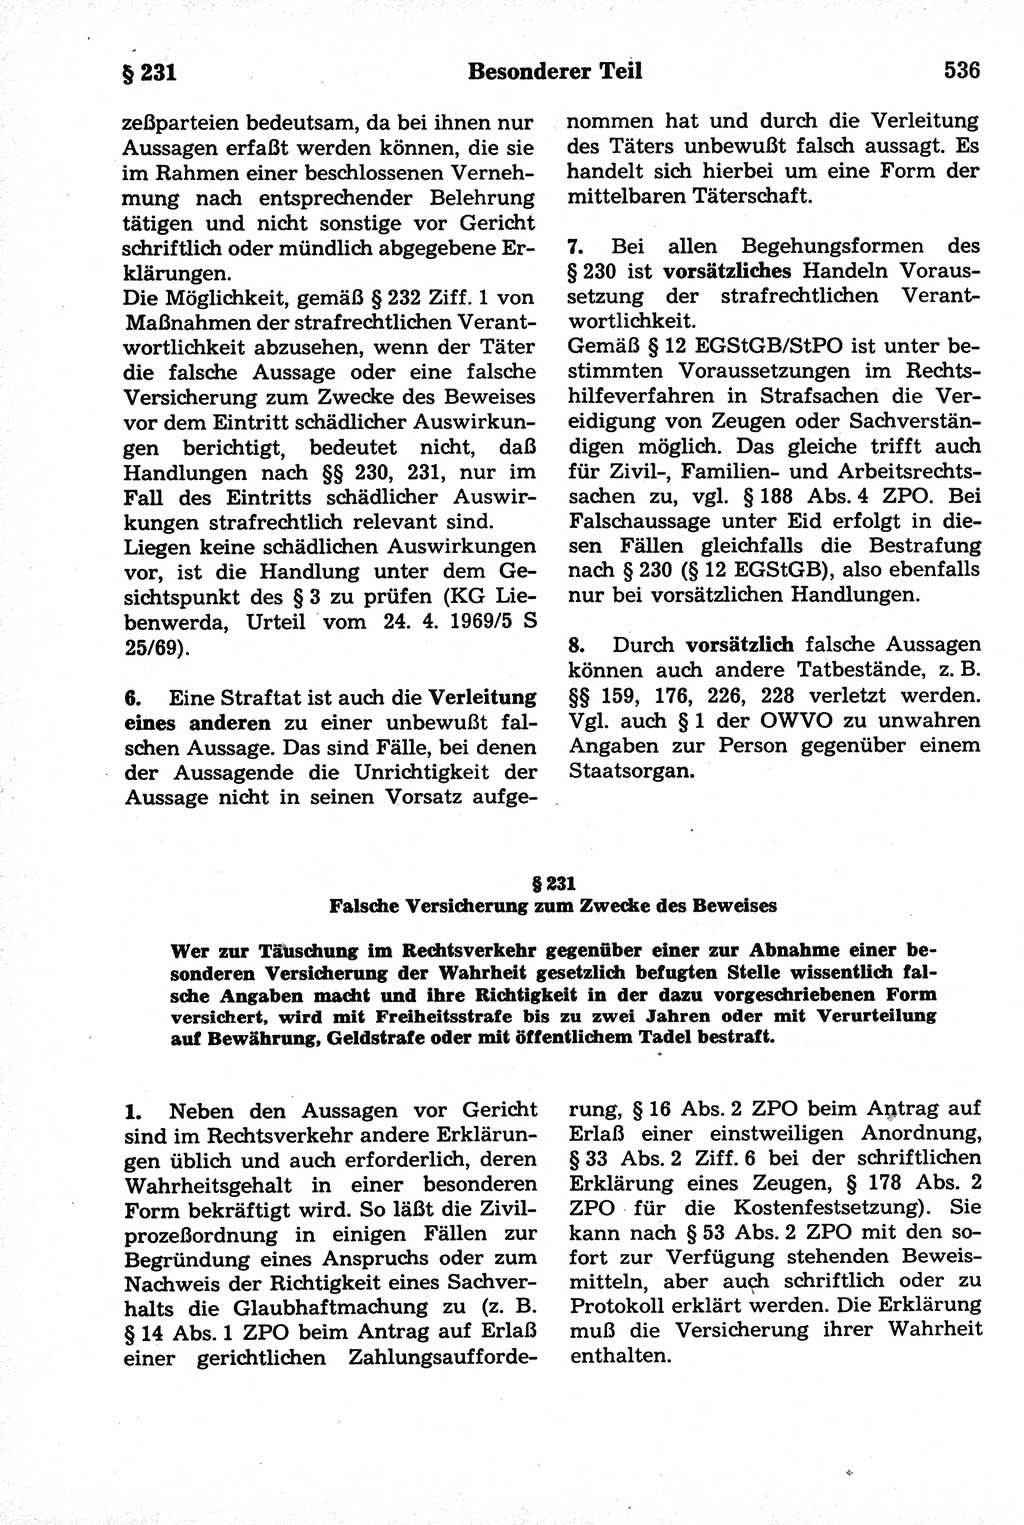 Strafrecht der Deutschen Demokratischen Republik (DDR), Kommentar zum Strafgesetzbuch (StGB) 1981, Seite 536 (Strafr. DDR Komm. StGB 1981, S. 536)